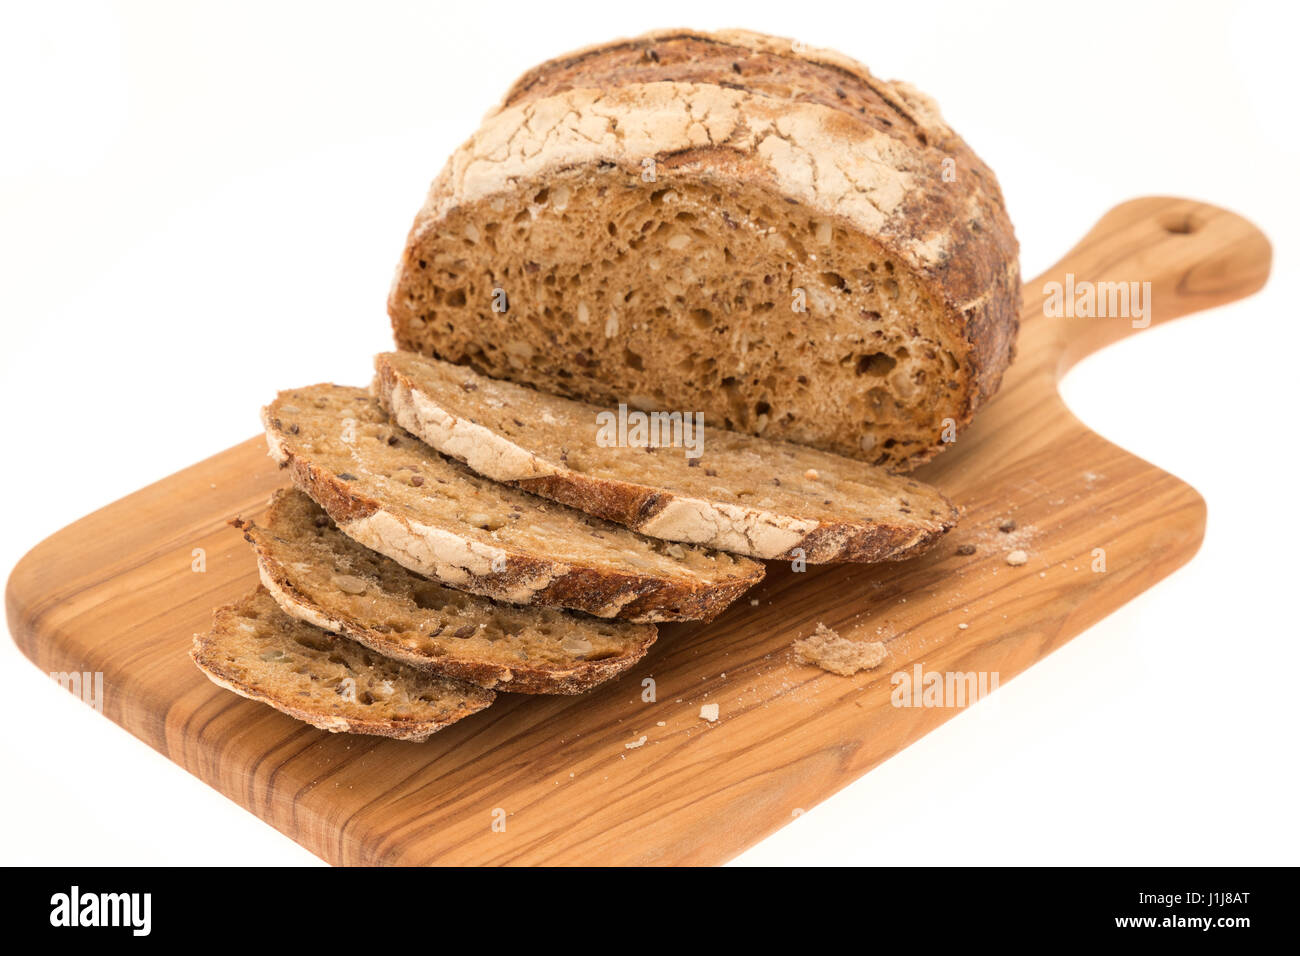 Un pain au levain tranché - studio photo avec un fond blanc Banque D'Images